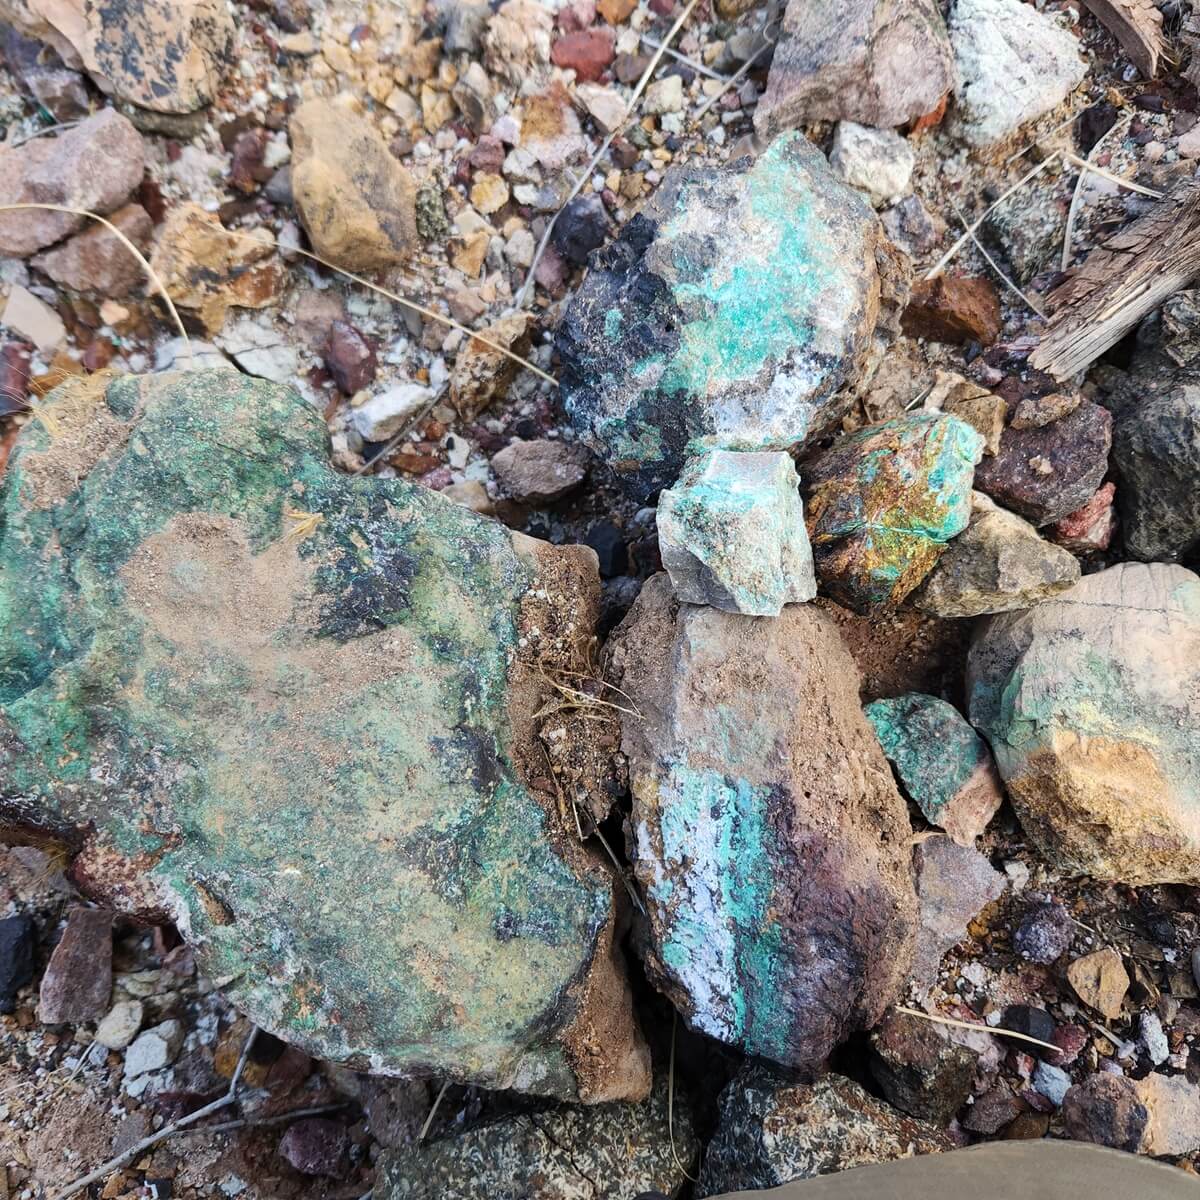 Copper minerals in wash 
Pinal County, Arizona 